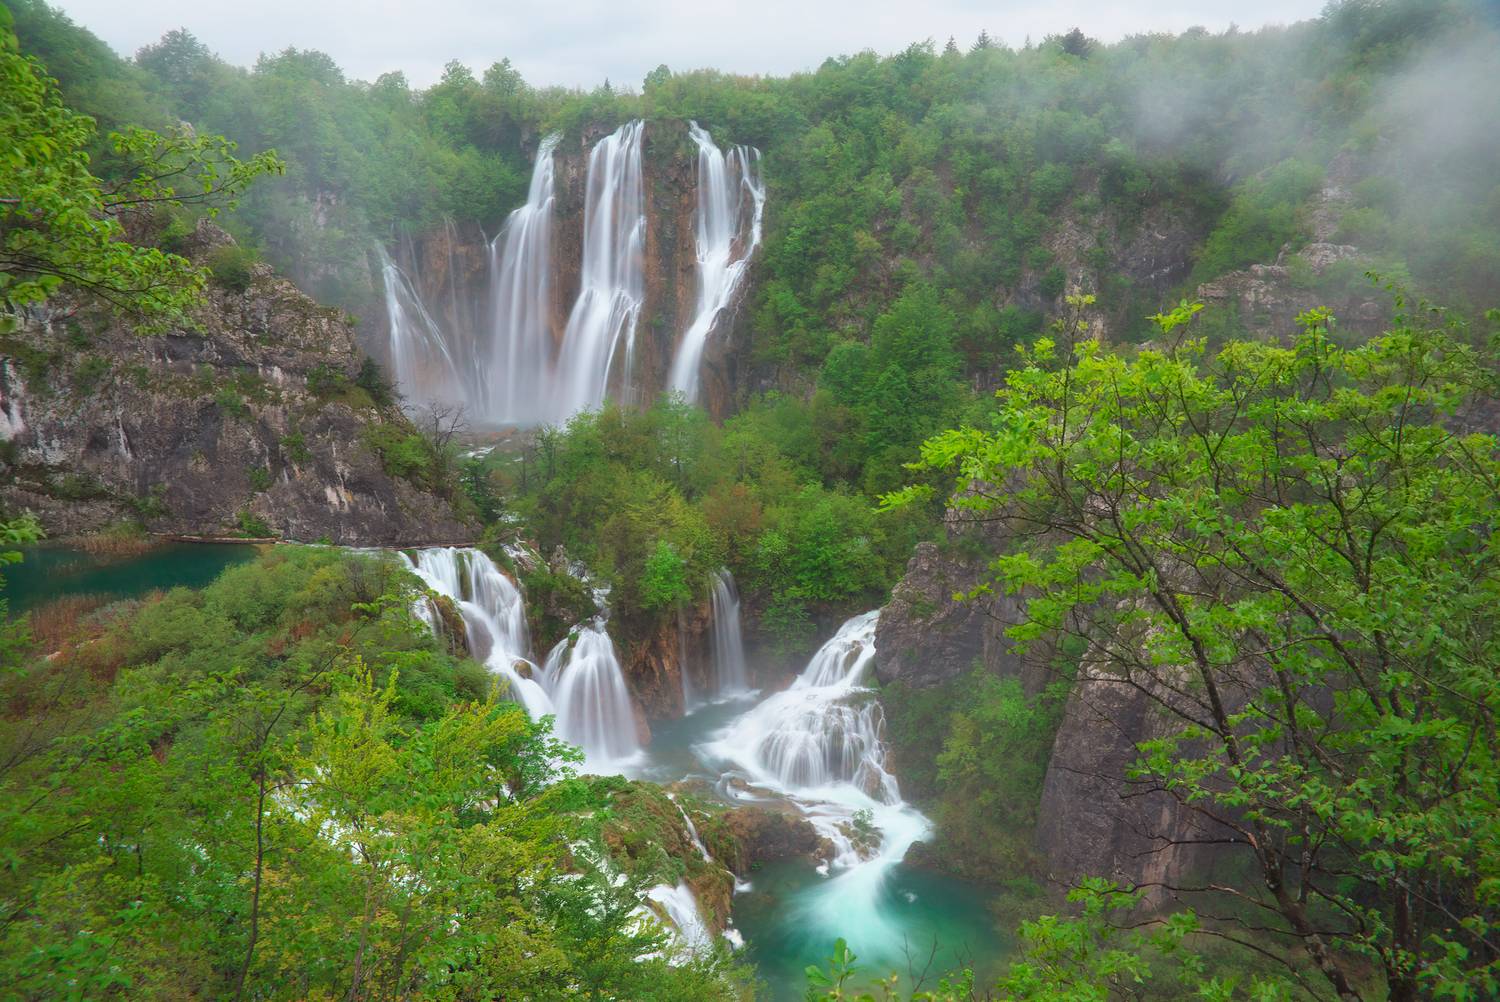 Horvátország csodája az UNESCO Világörökség részét képező Plitvicei-tavak Nemzeti Park a mesés vízesésekkel és türkizkék tavakkal. Legnagyobb zuhataga, a Veliki Slap, vagyis a Nagy-vízesés 78 méter magasságból zúdul alá.